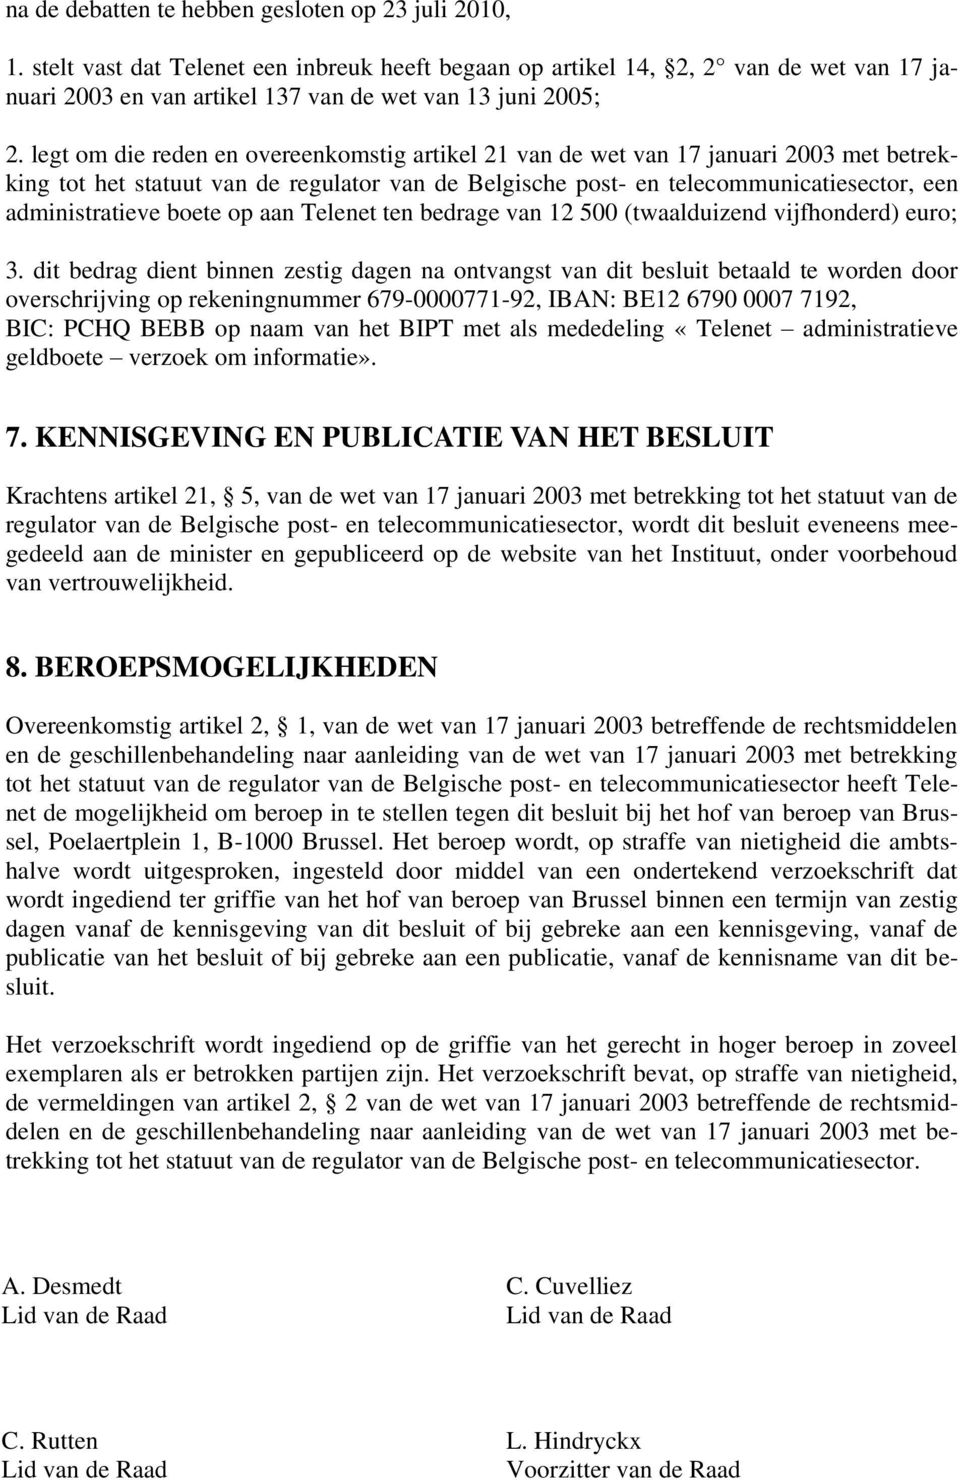 legt om die reden en overeenkomstig artikel 21 van de wet van 17 januari 2003 met betrekking tot het statuut van de regulator van de Belgische post- en telecommunicatiesector, een administratieve